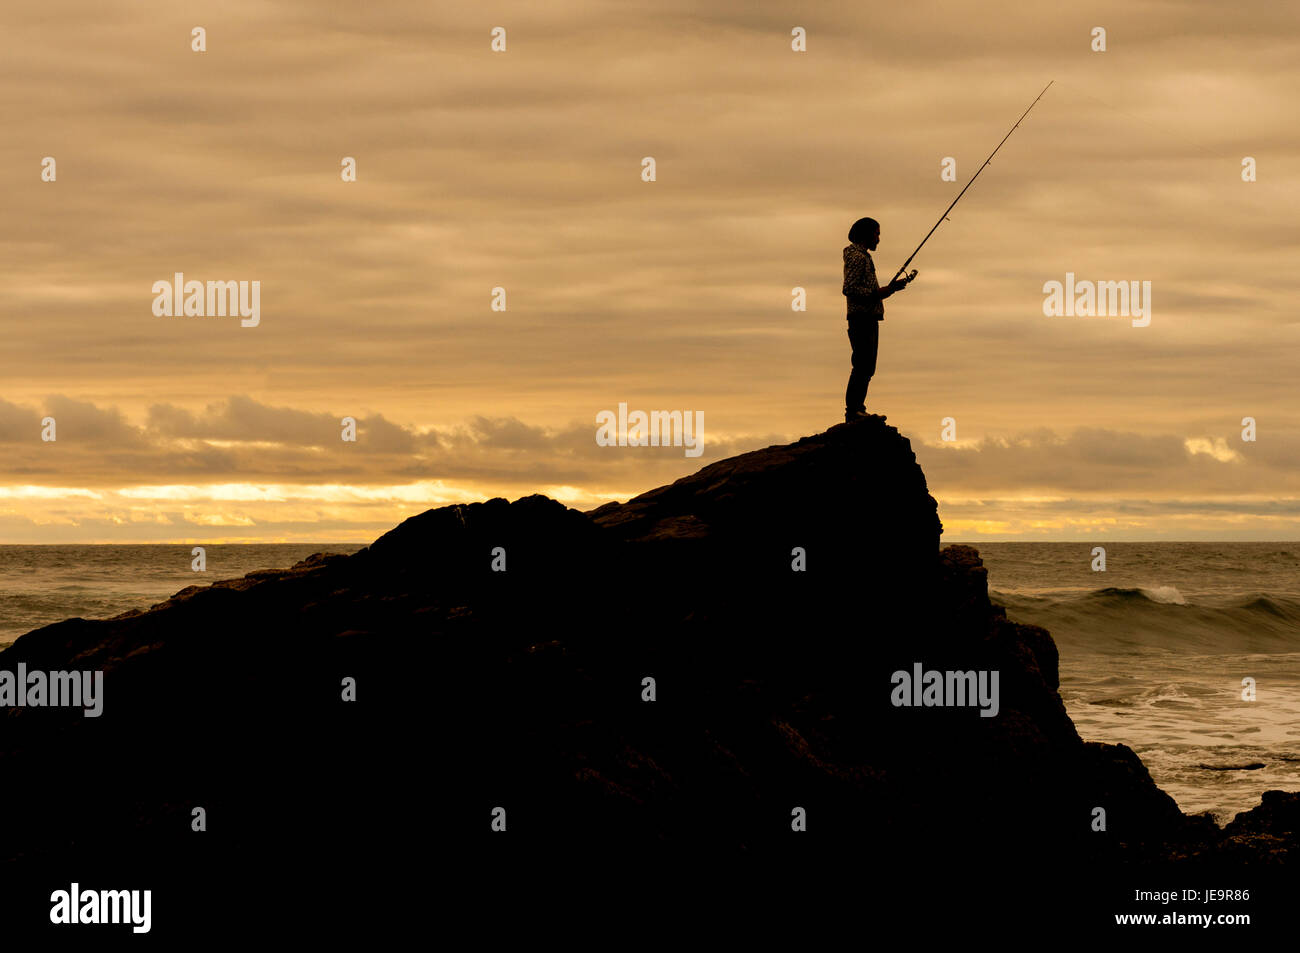 Pesca y pescadores / Fisherman in the sea Stock Photo